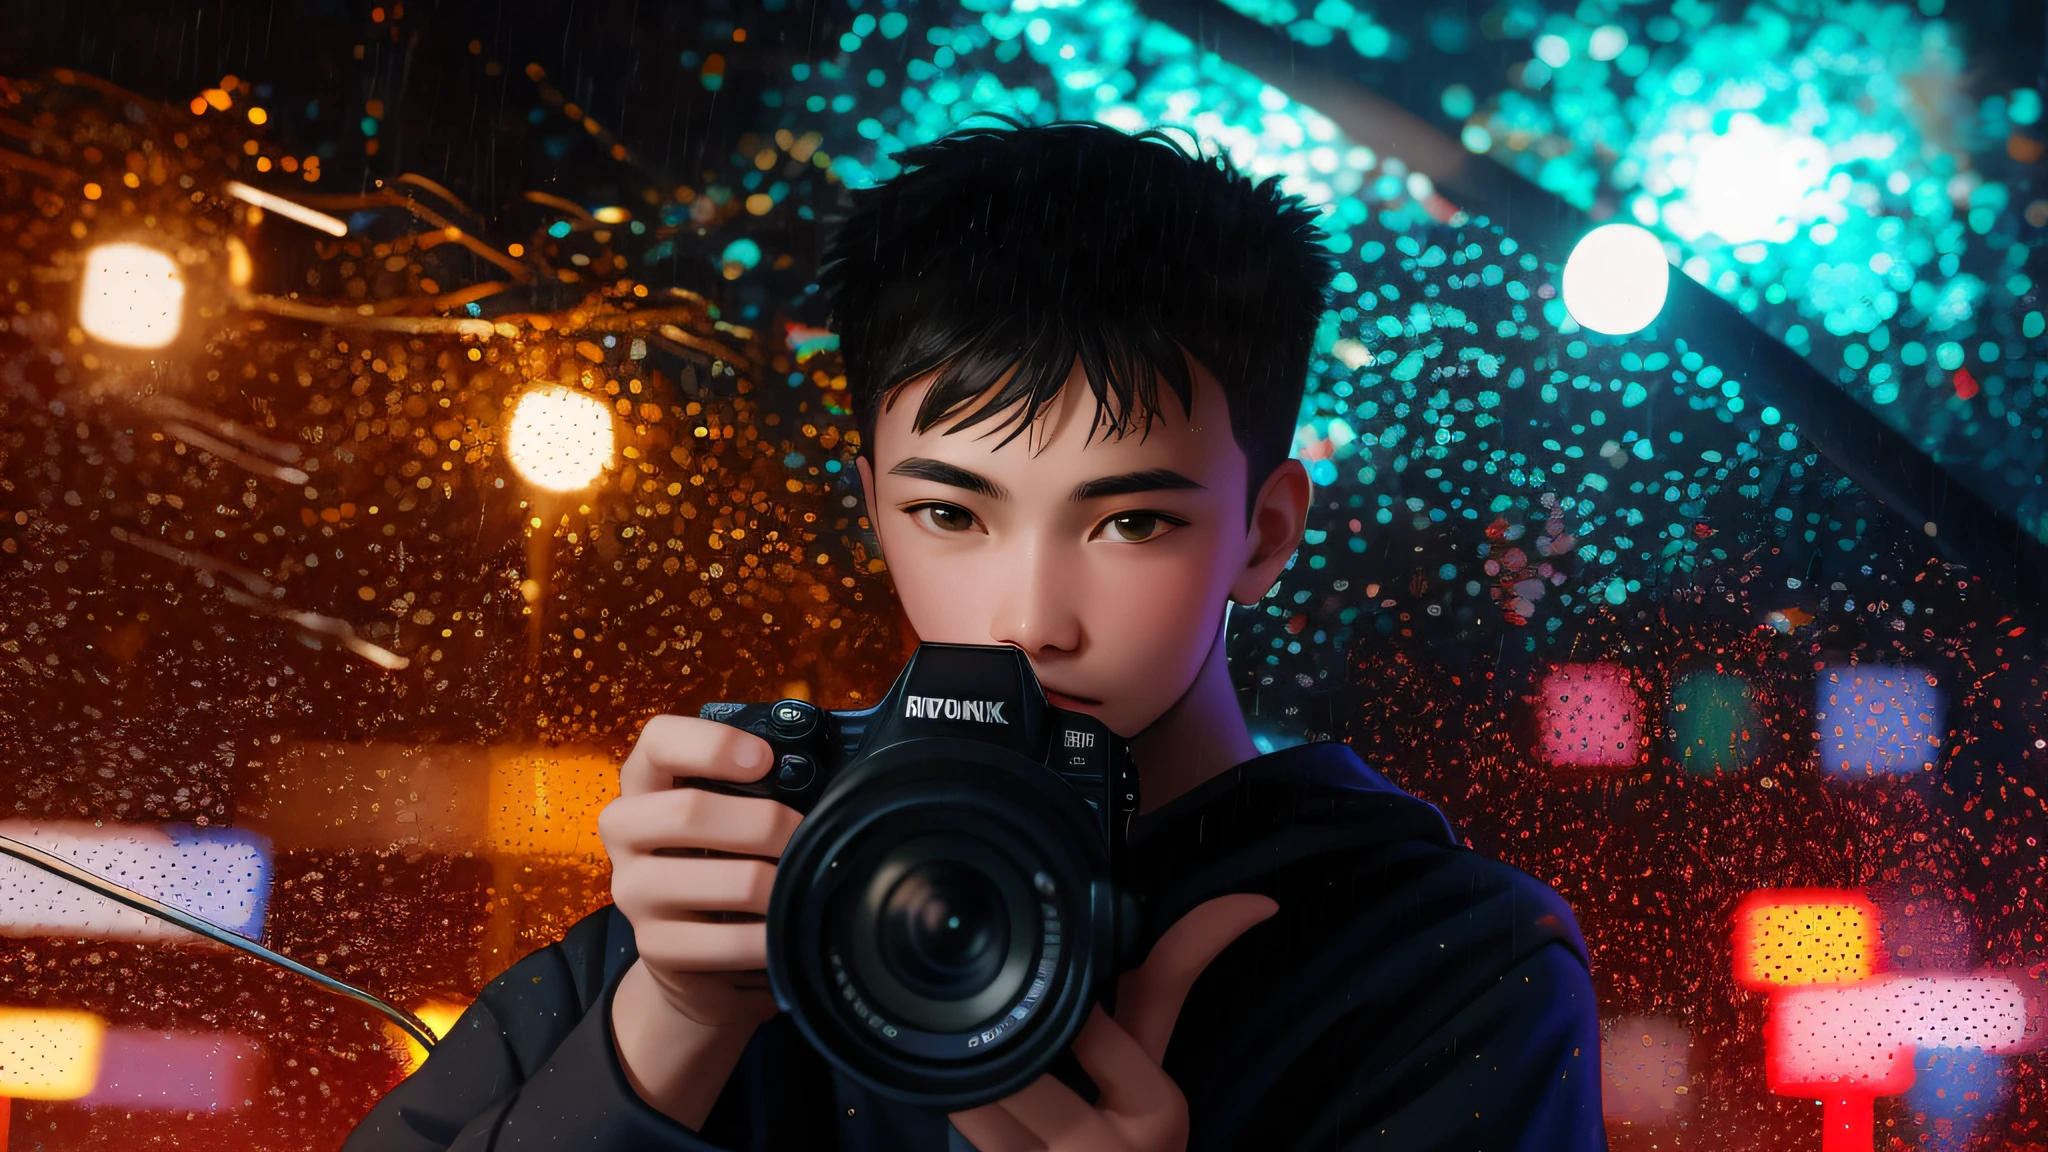 Junge mit Kamera fotografiert im Regen, Porträt von Menschen